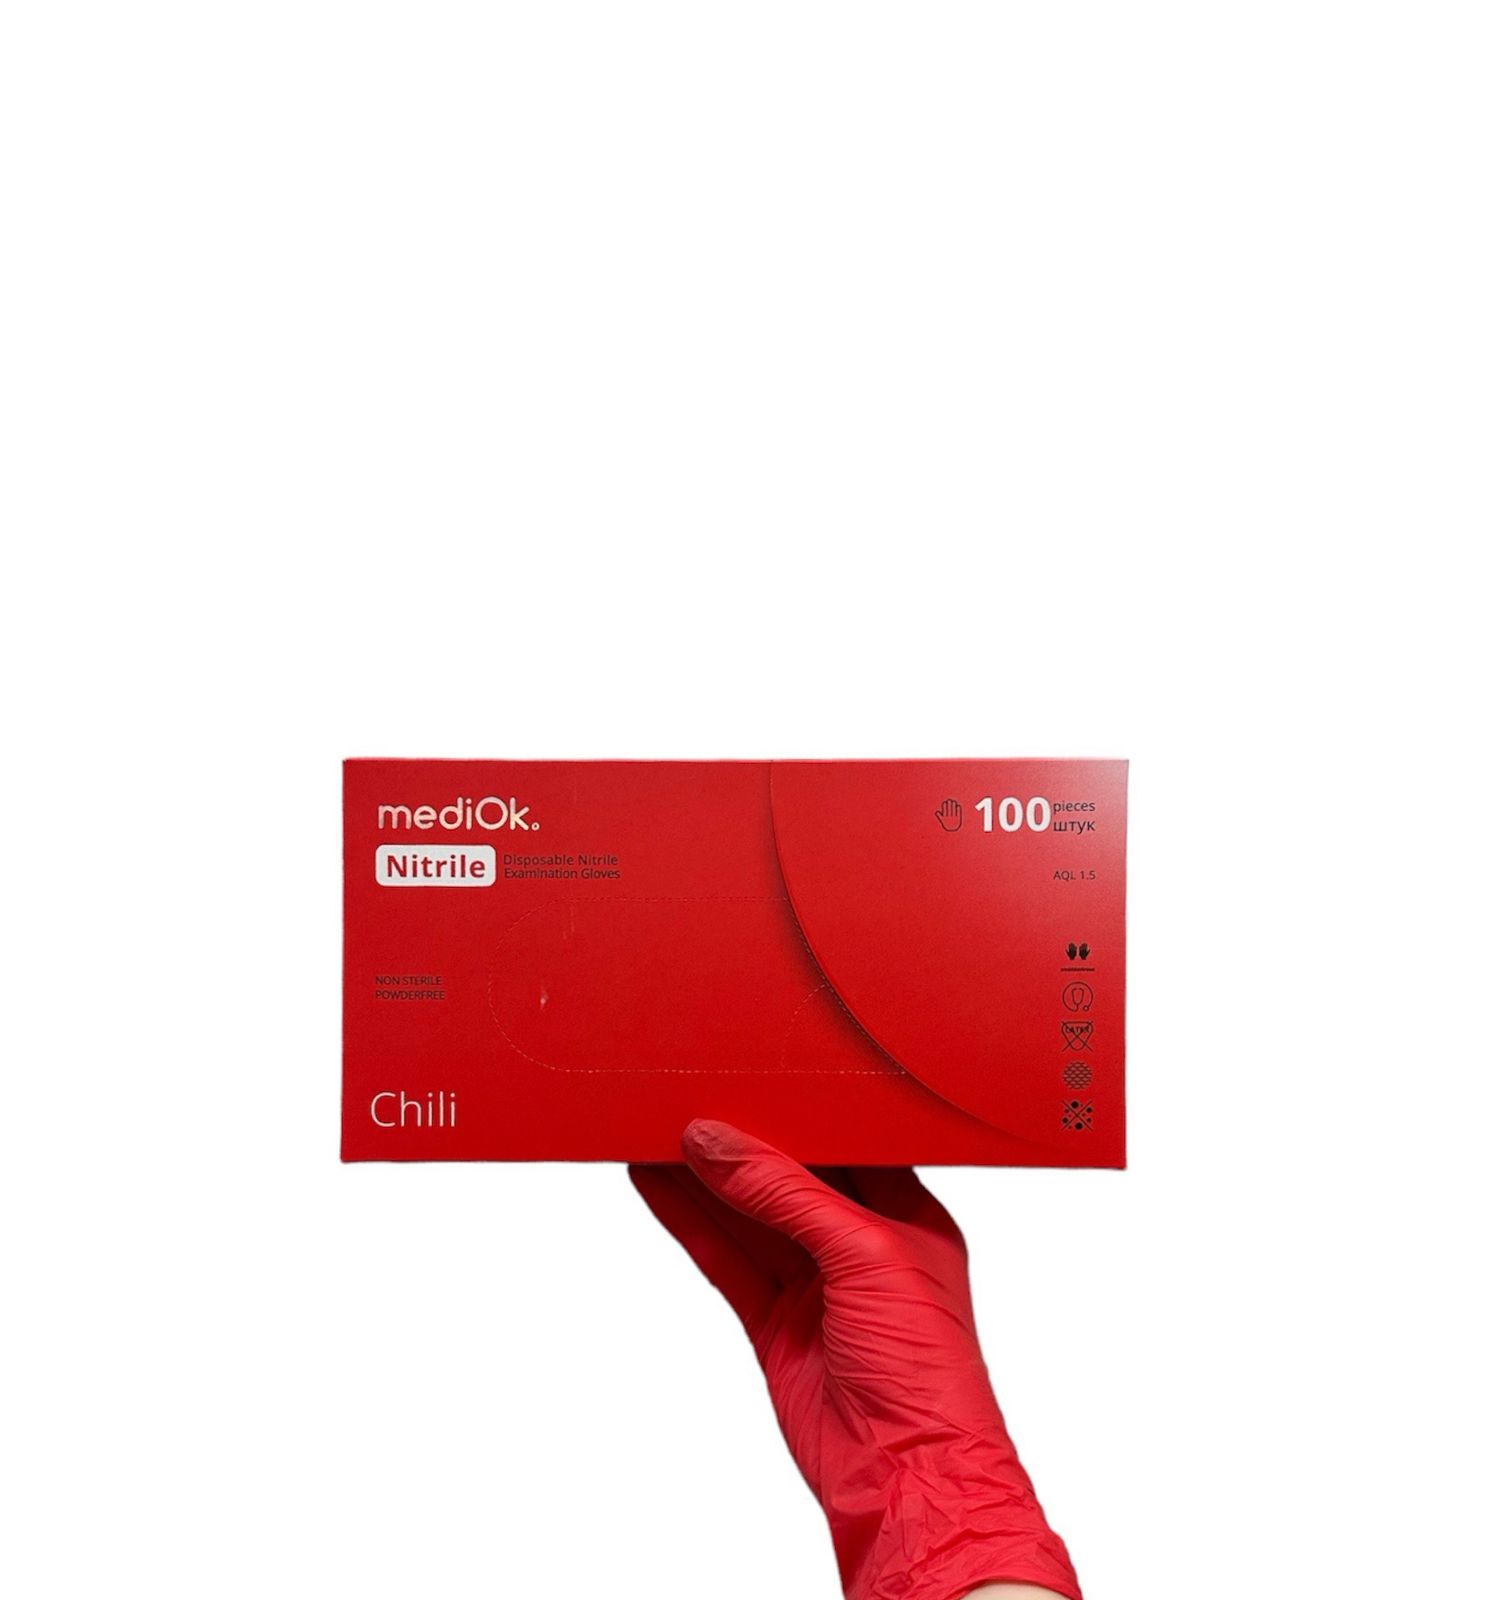 Перчатки mediOk нитриловые, цв. Красный (CHILI), размер M